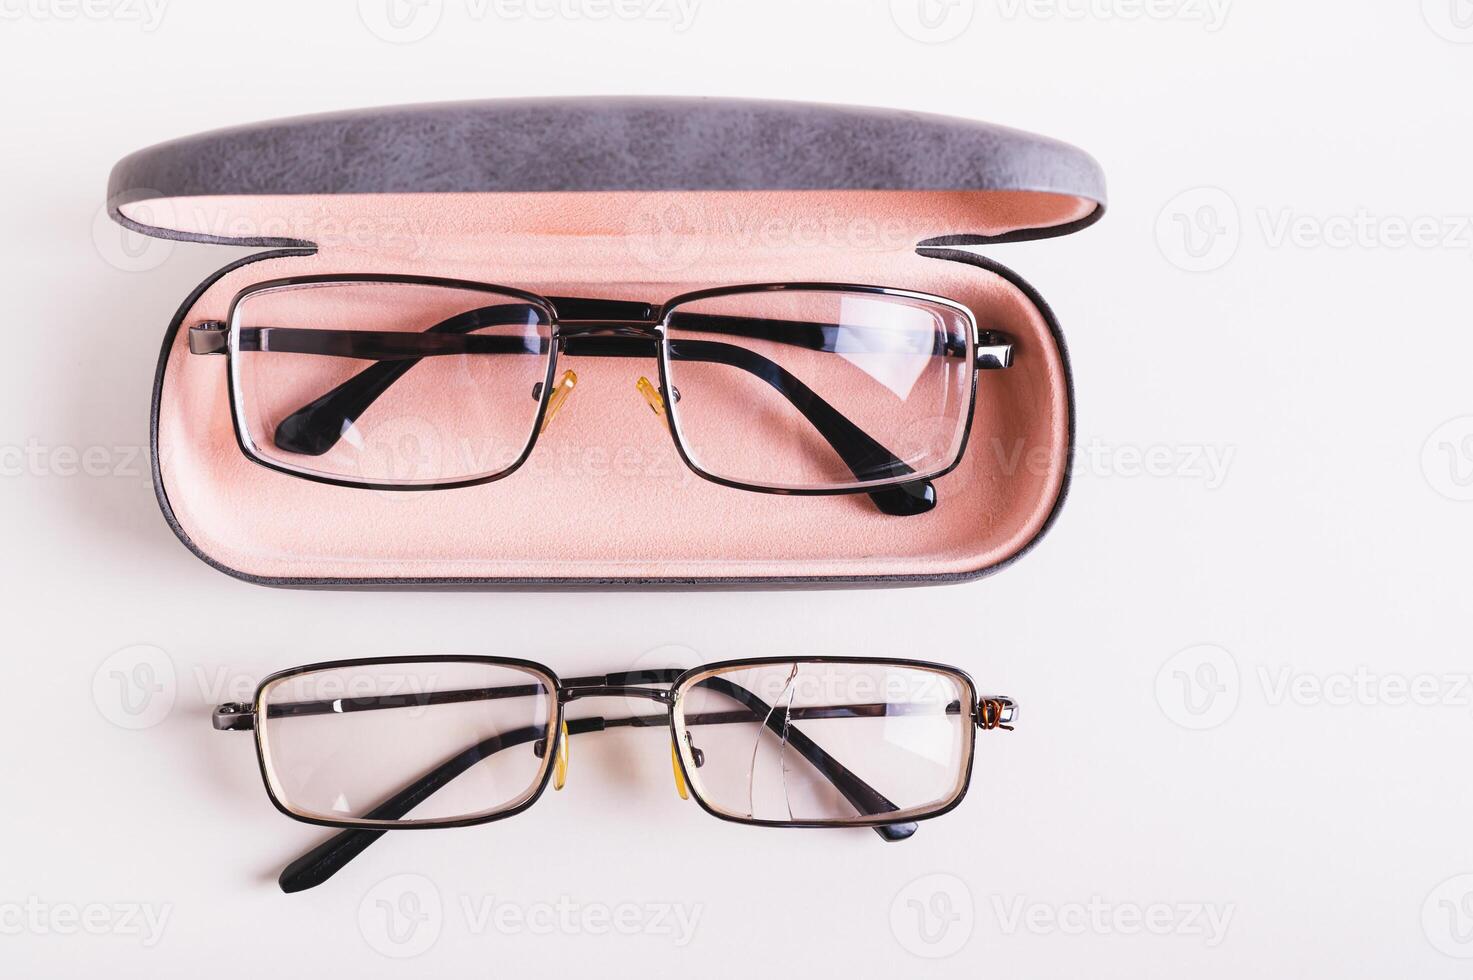 hela glasögon i en hård fall och bruten glasögon på de tabell topp se foto